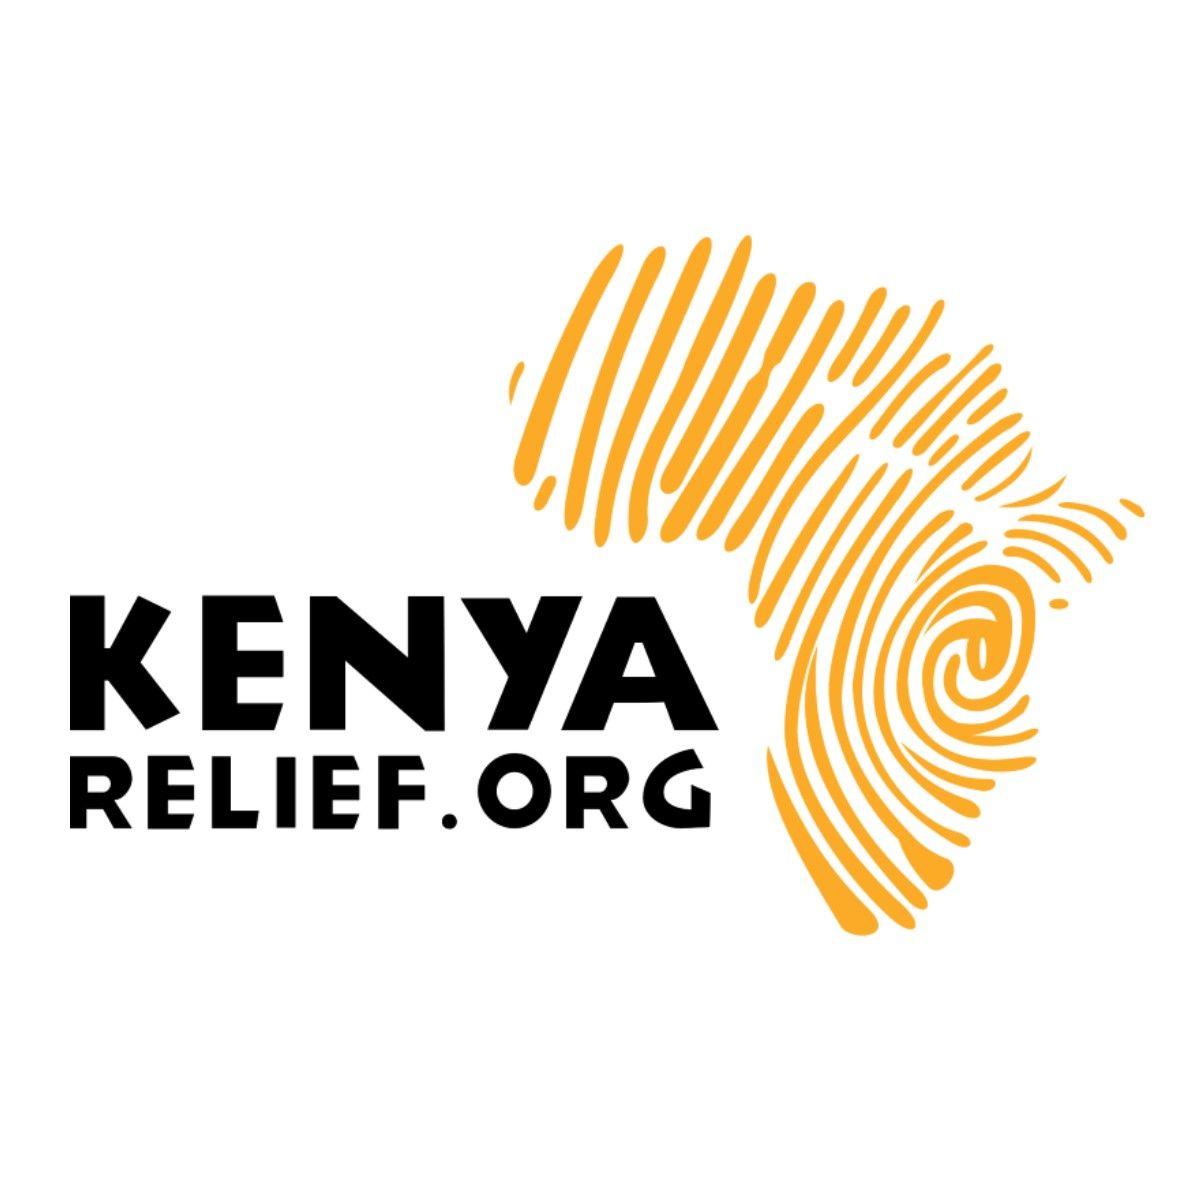 Relief Logo - KenyaRelief.org